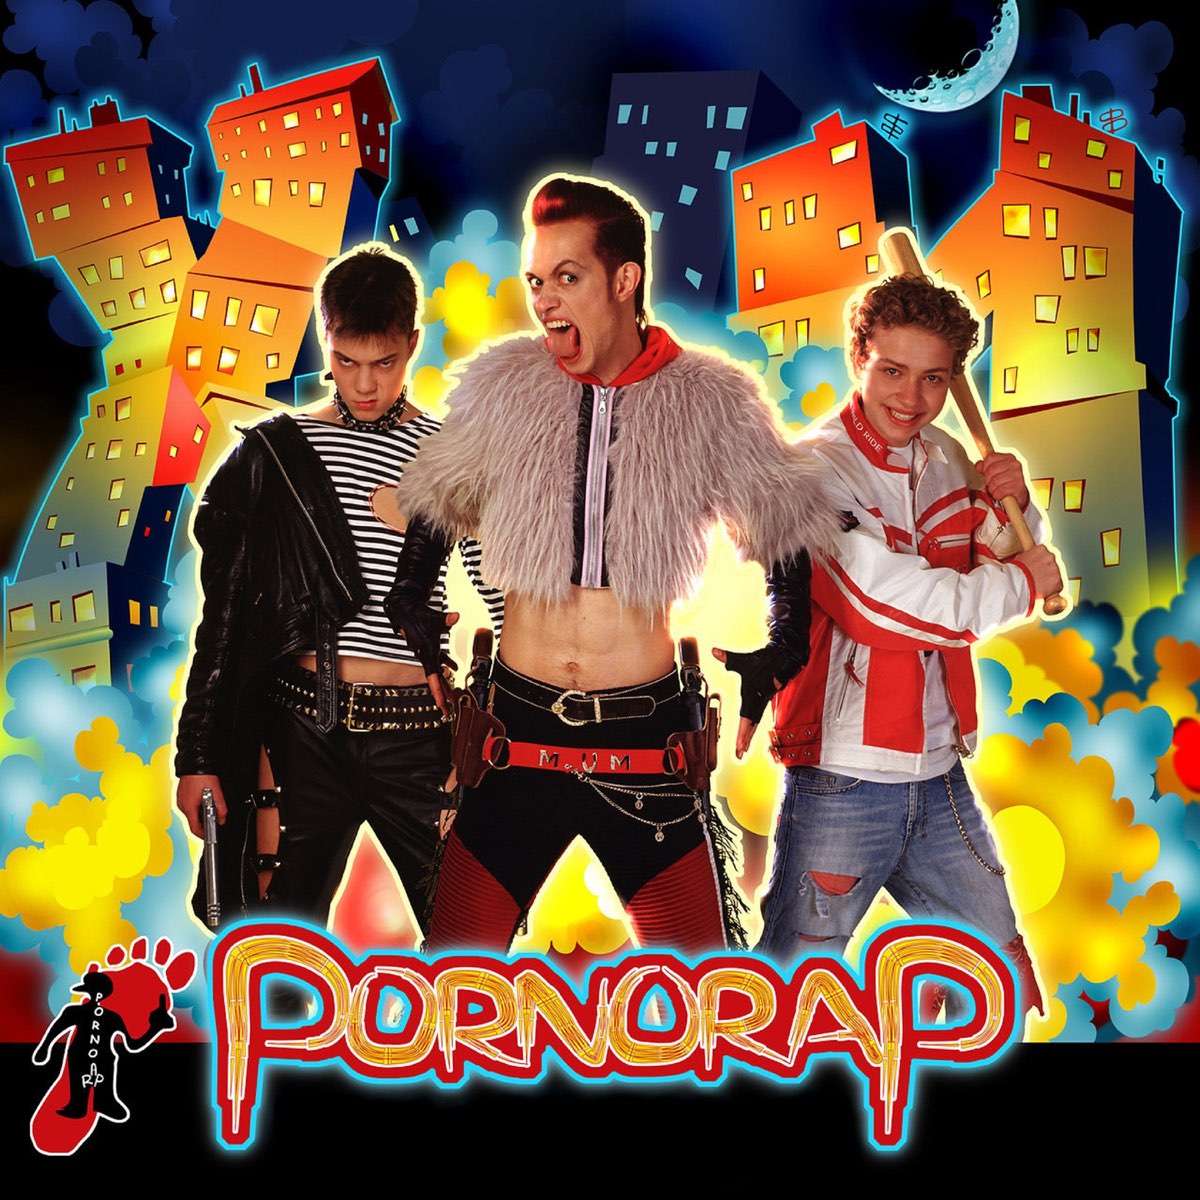 Альбом "Pornorap" (POR.NORAP) .